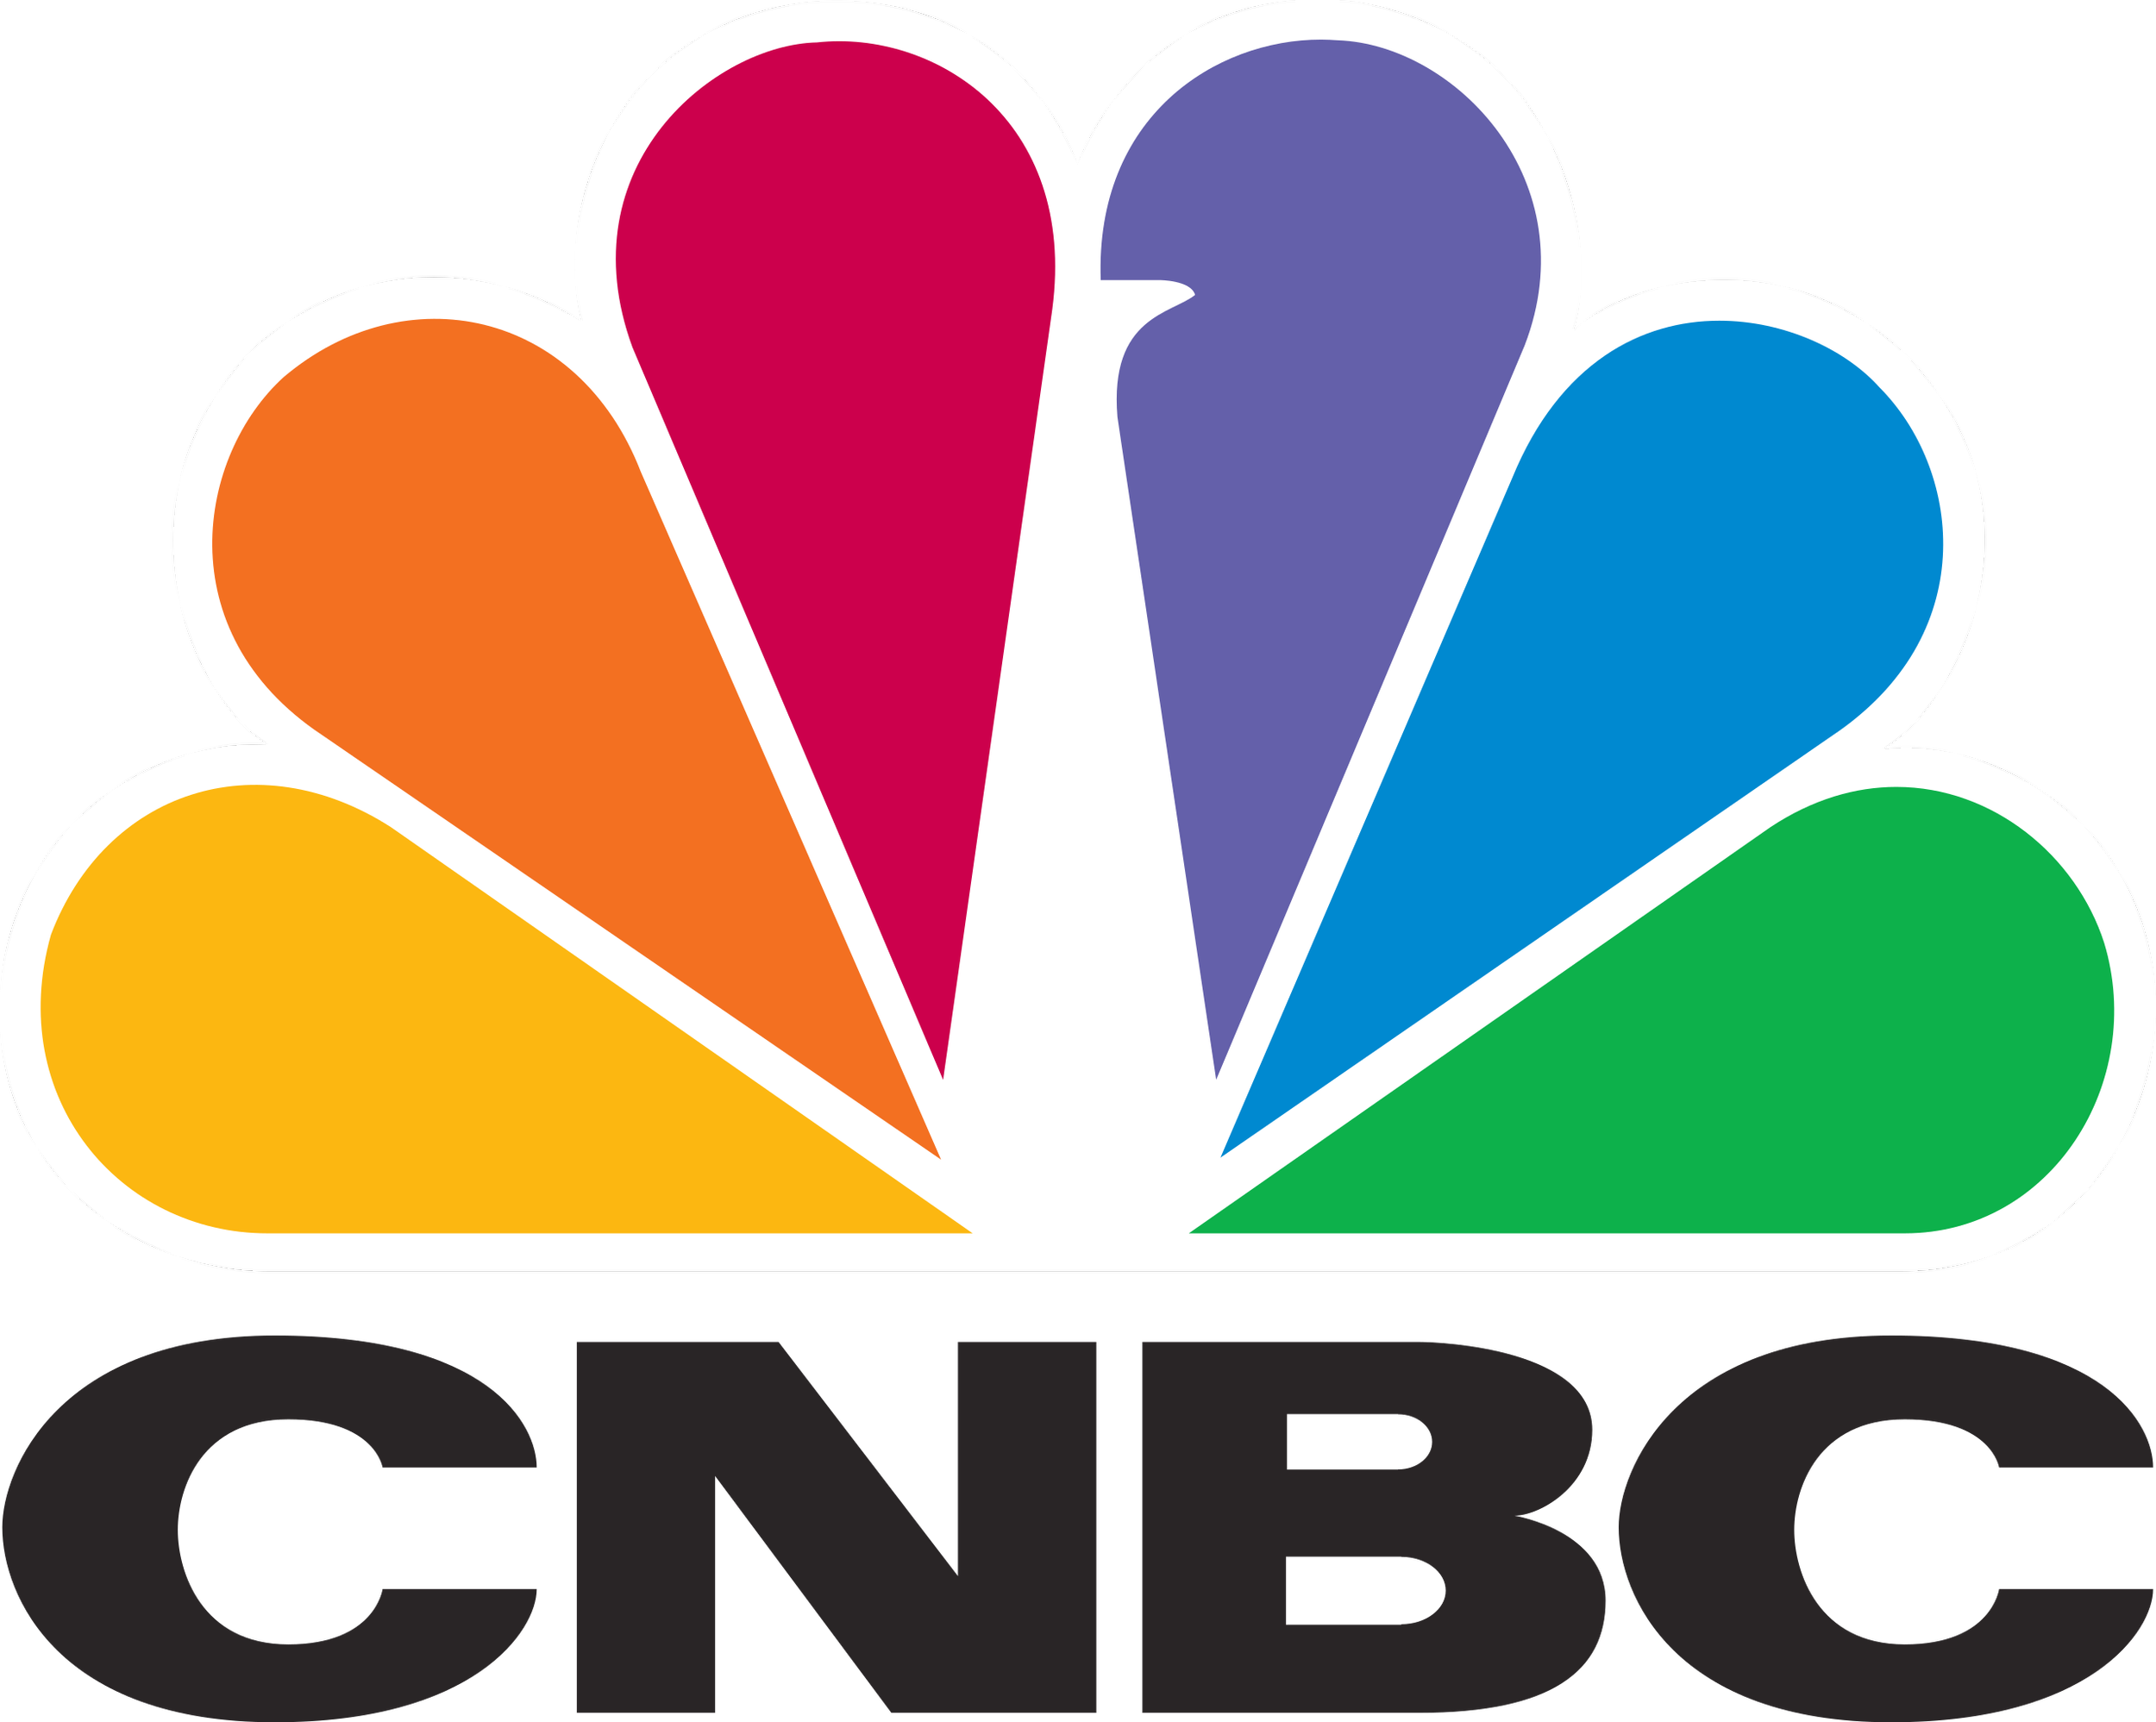 2560px-CNBC_logo.svg.png